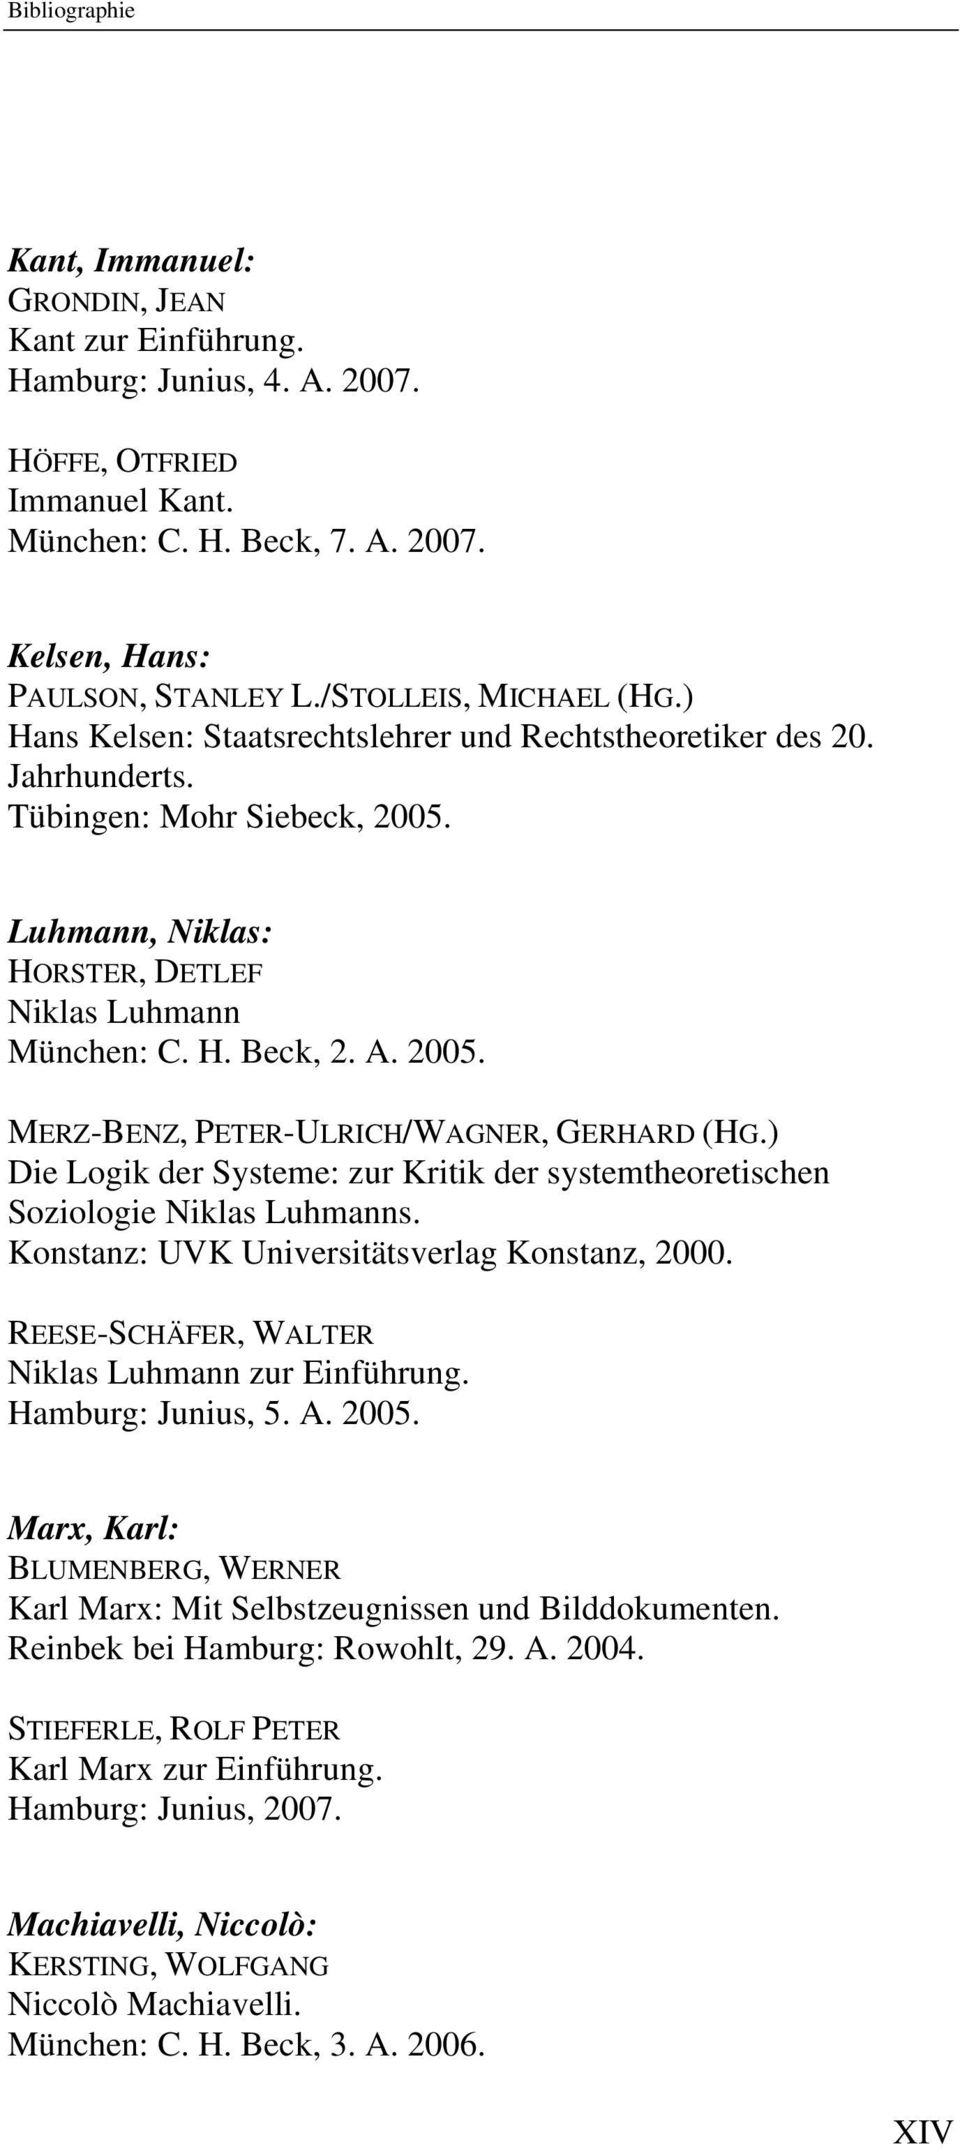 A. 2005. MERZ-BENZ, PETER-ULRICH/WAGNER, GERHARD (HG.) Die Logik der Systeme: zur Kritik der systemtheoretischen Soziologie Niklas Luhmanns. Konstanz: UVK Universitätsverlag Konstanz, 2000.